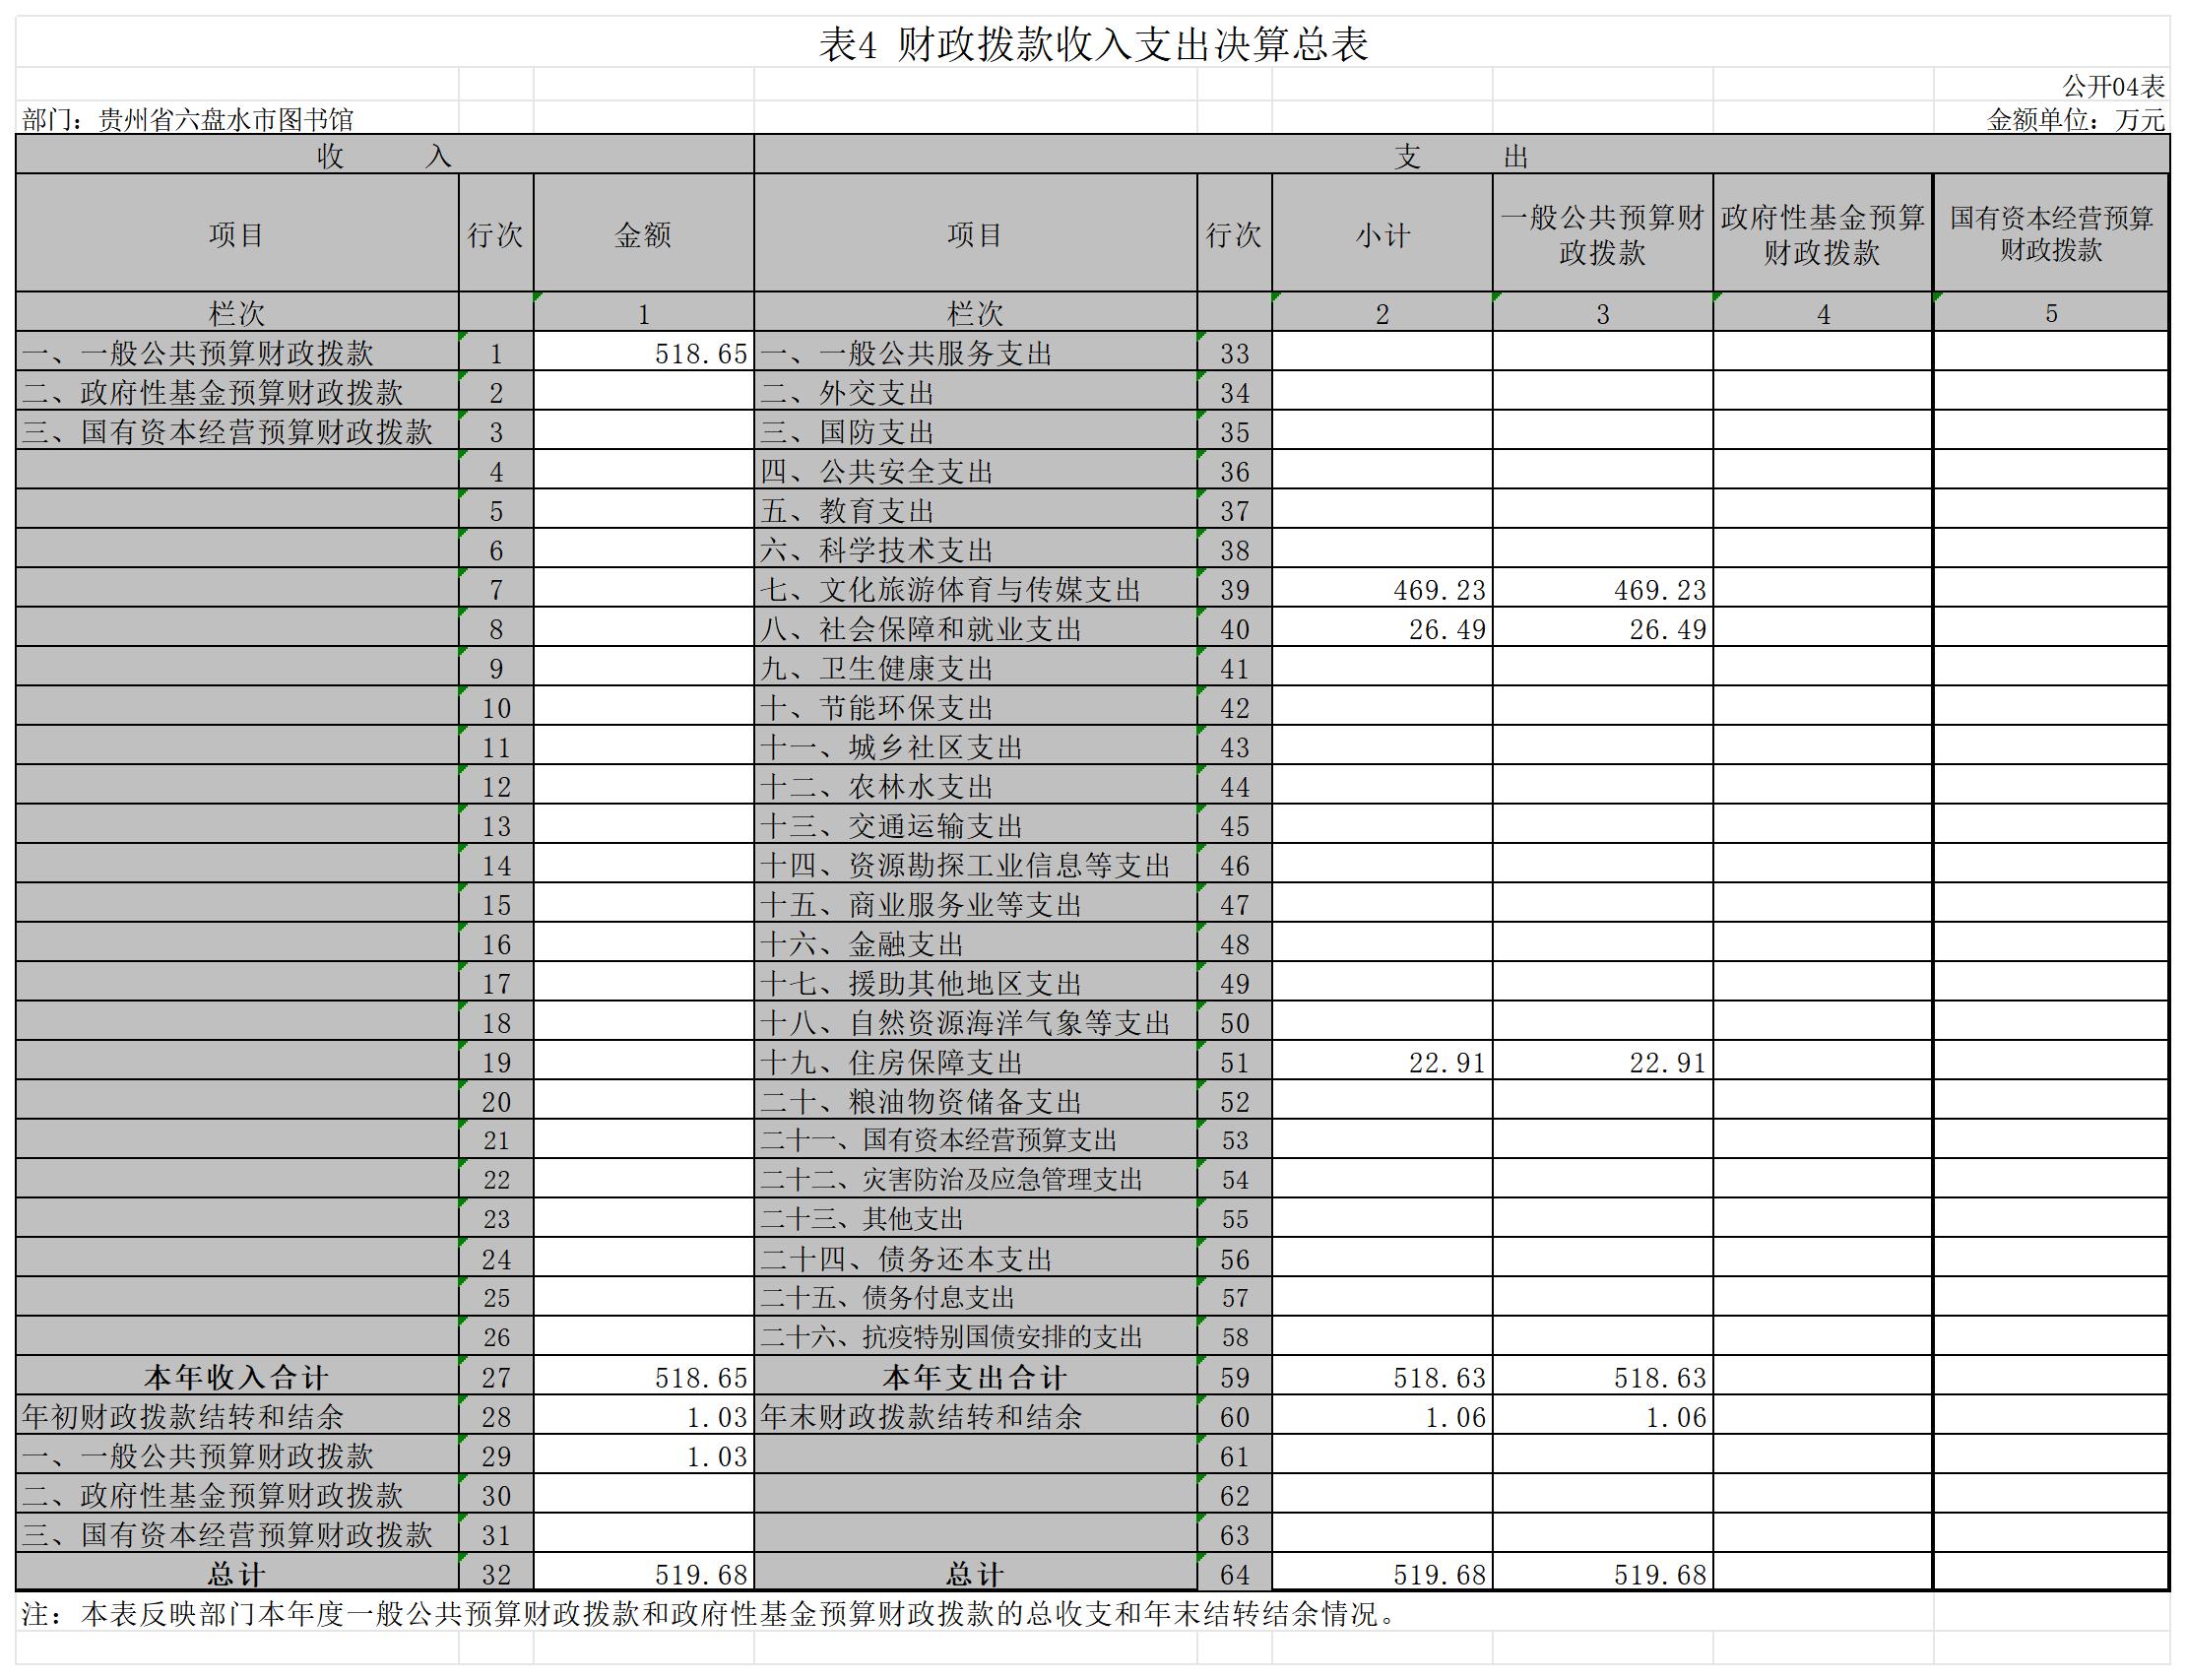 贵州省六盘水市图书馆2021年部门决算公开表格_G04 表4 财政拨款收入支出决算总表(公开04表).jpg